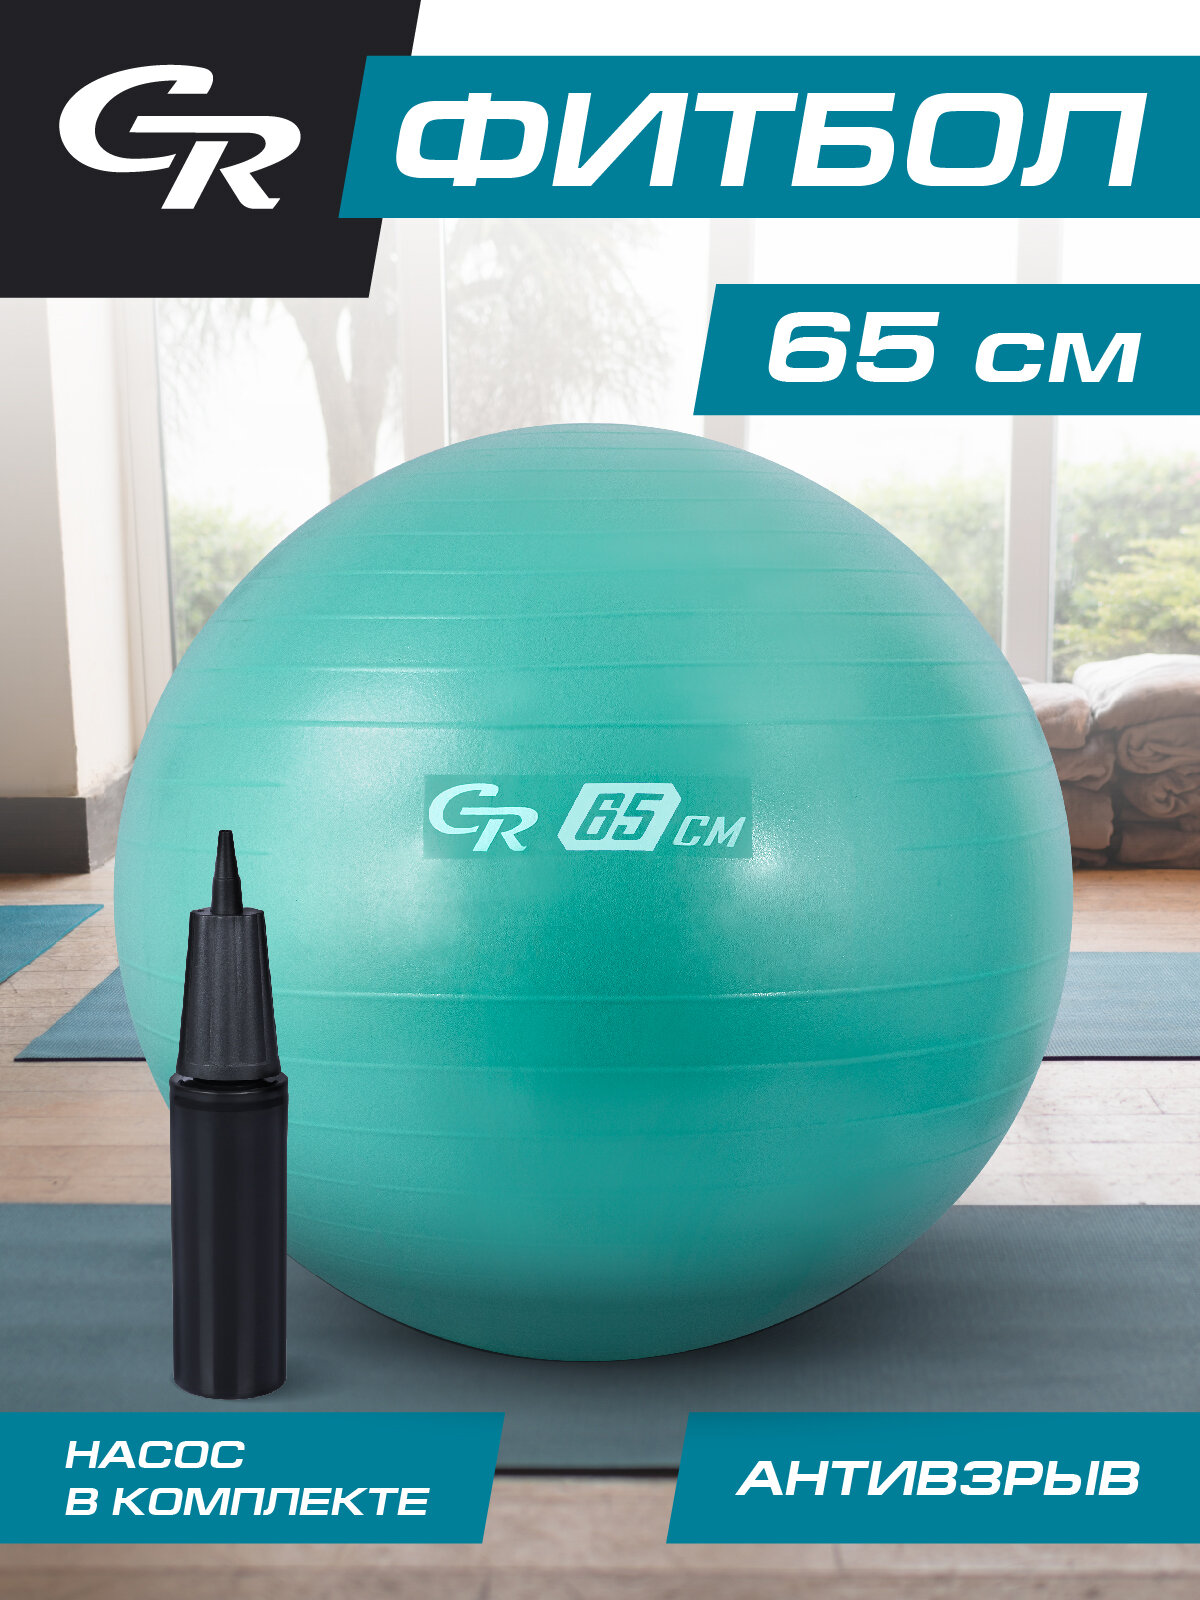 Мяч гимнастический фитбол ТМ City-Ride, для фитнеса, 65 см, 1000 г, антивзрыв, насос, цвет мятный